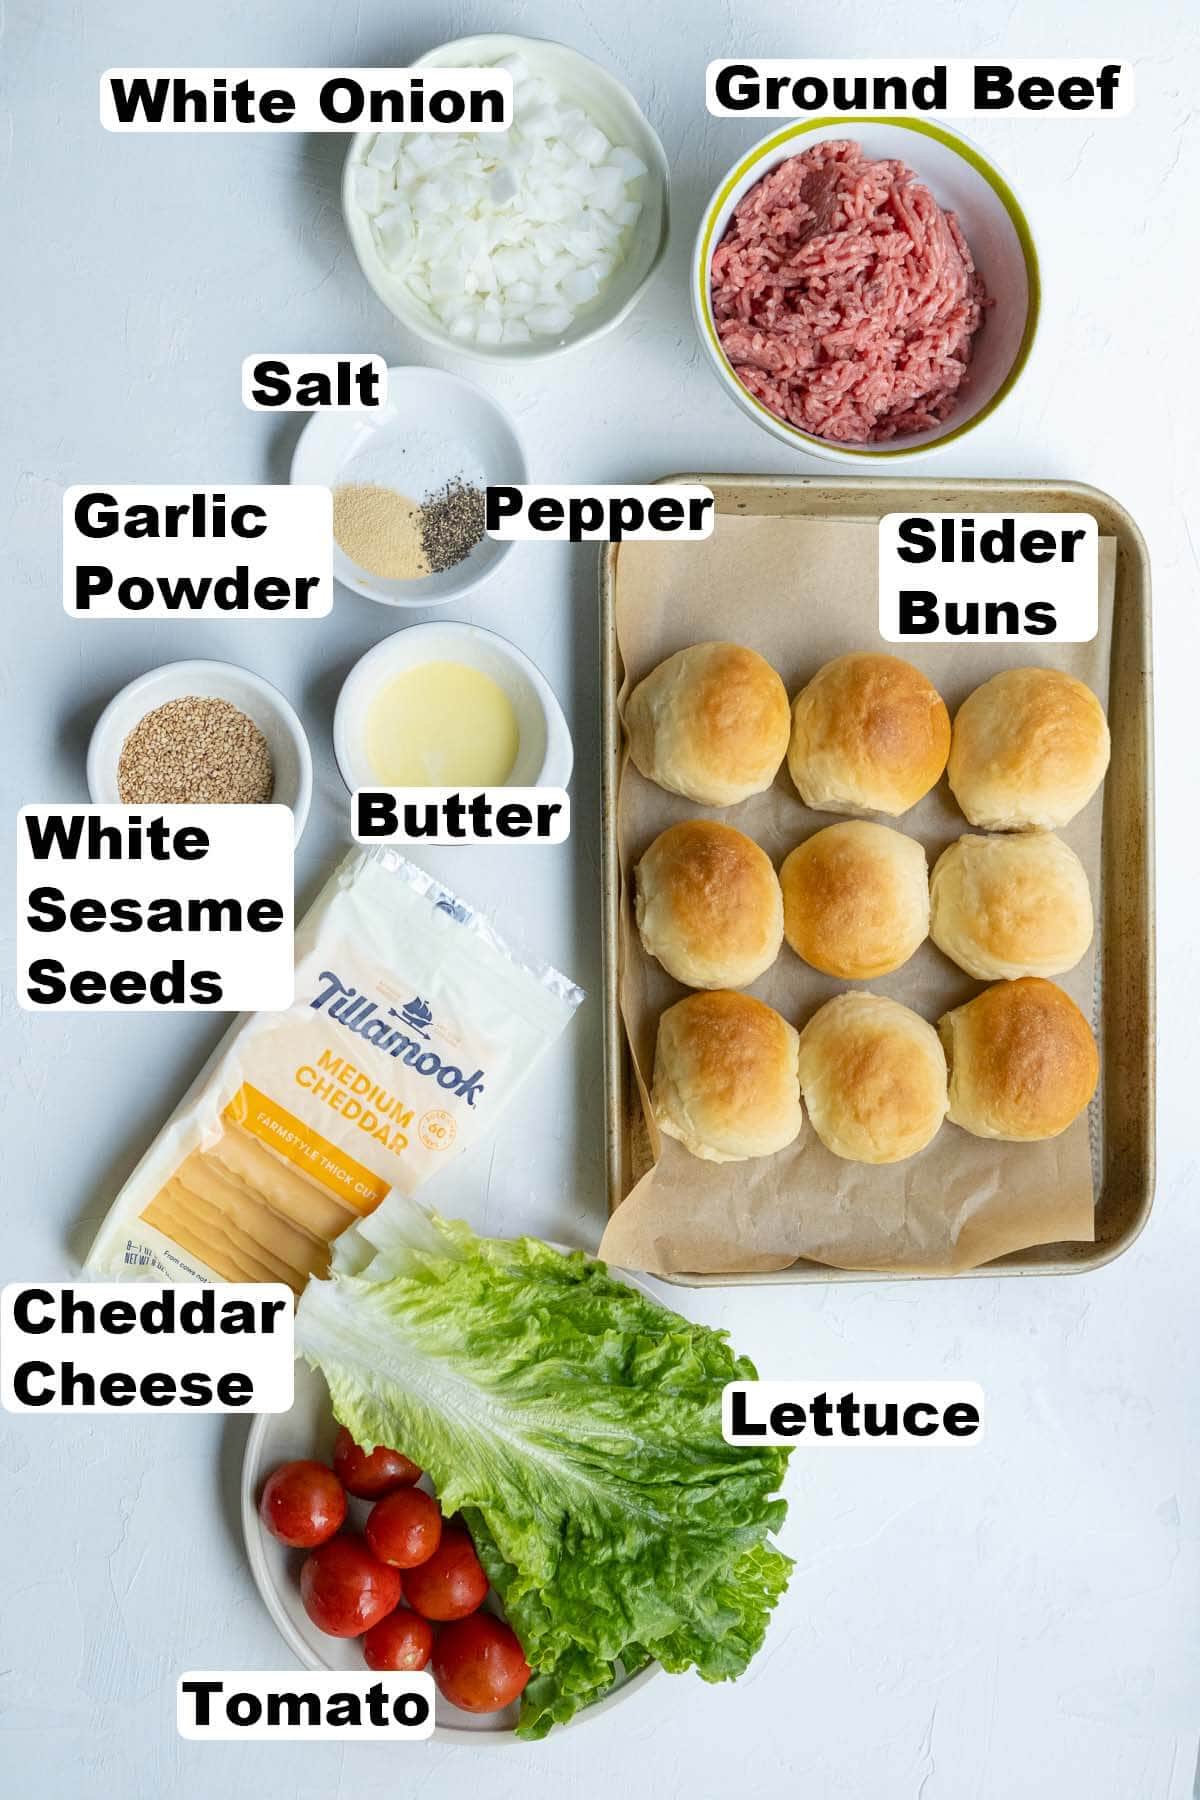 Cheeseburger sliders ingredients. 